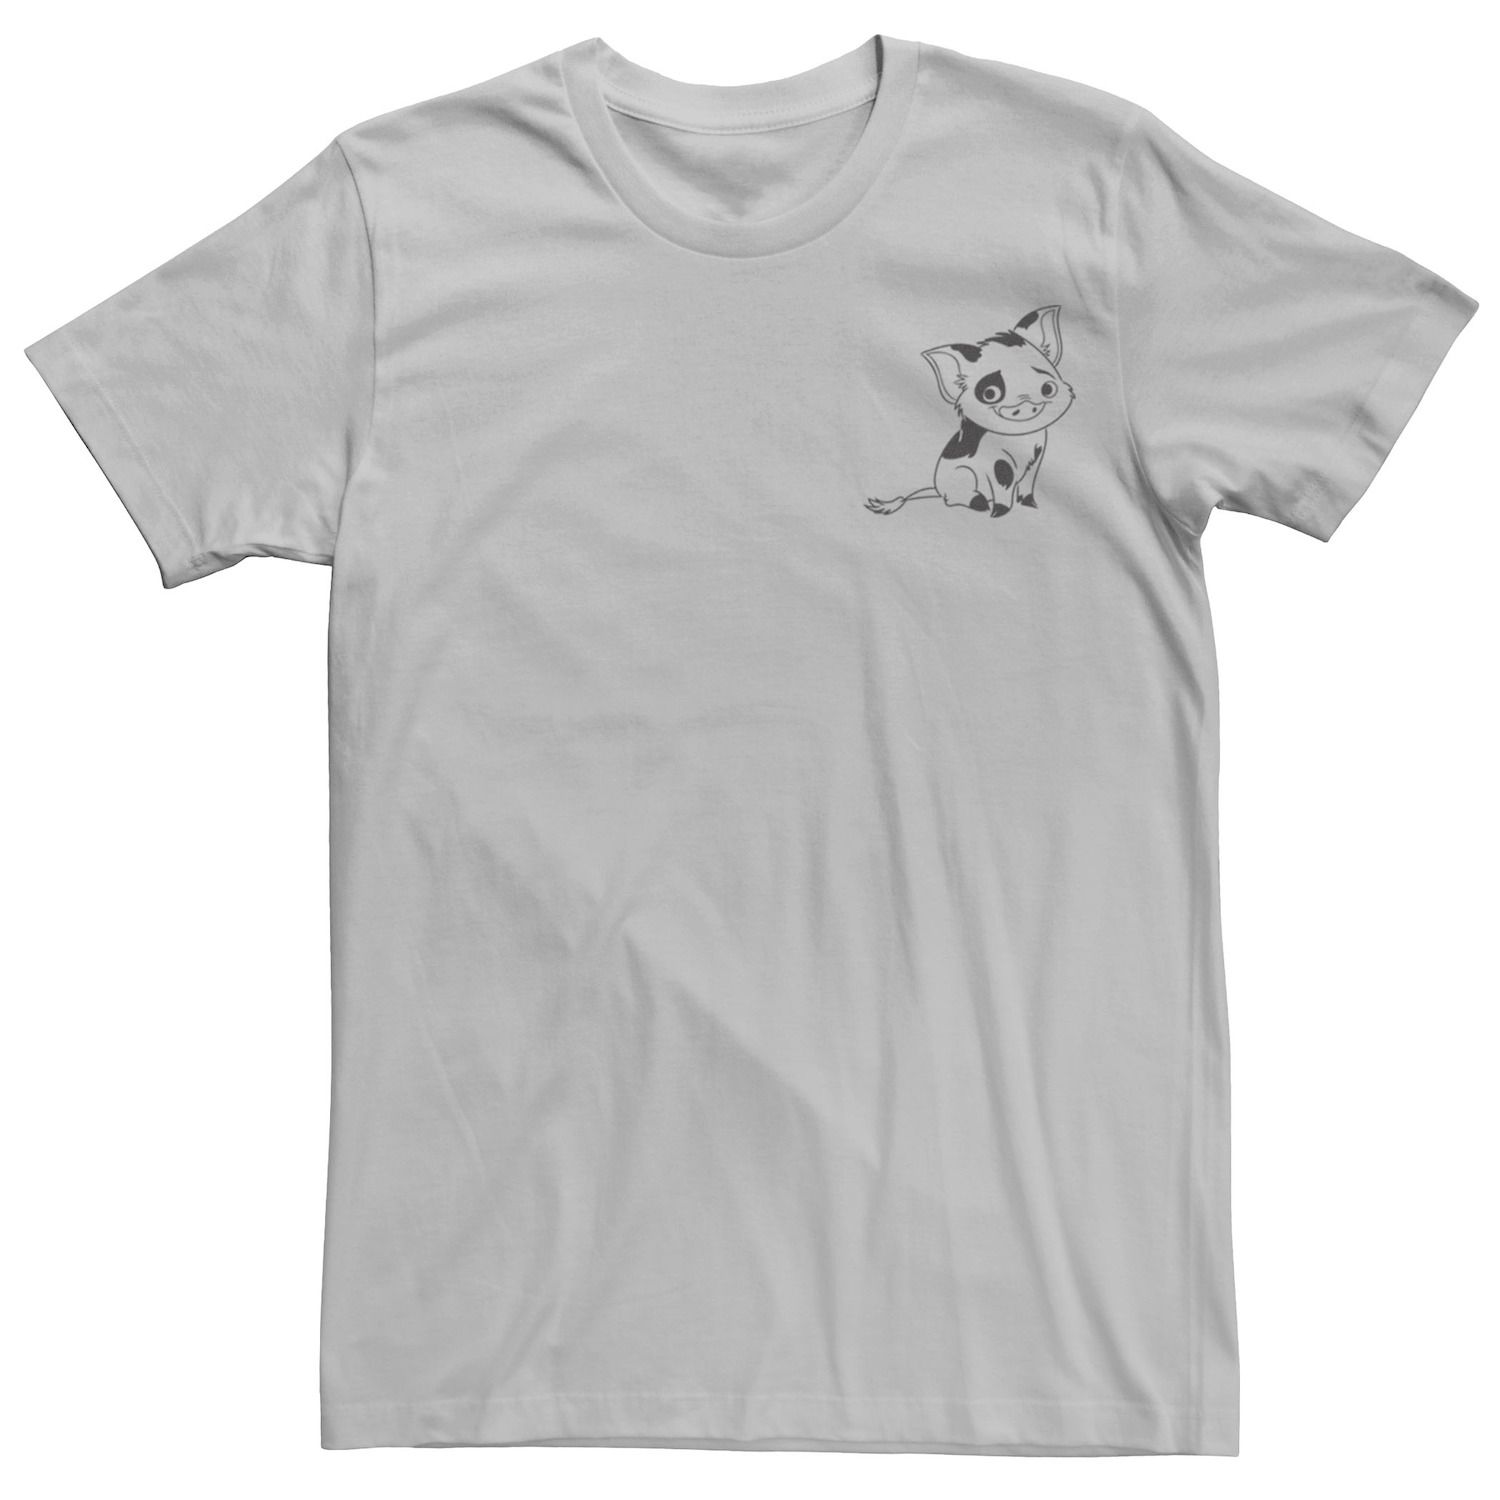 Мужская футболка Moana Pua Outline с левой стороны груди Disney